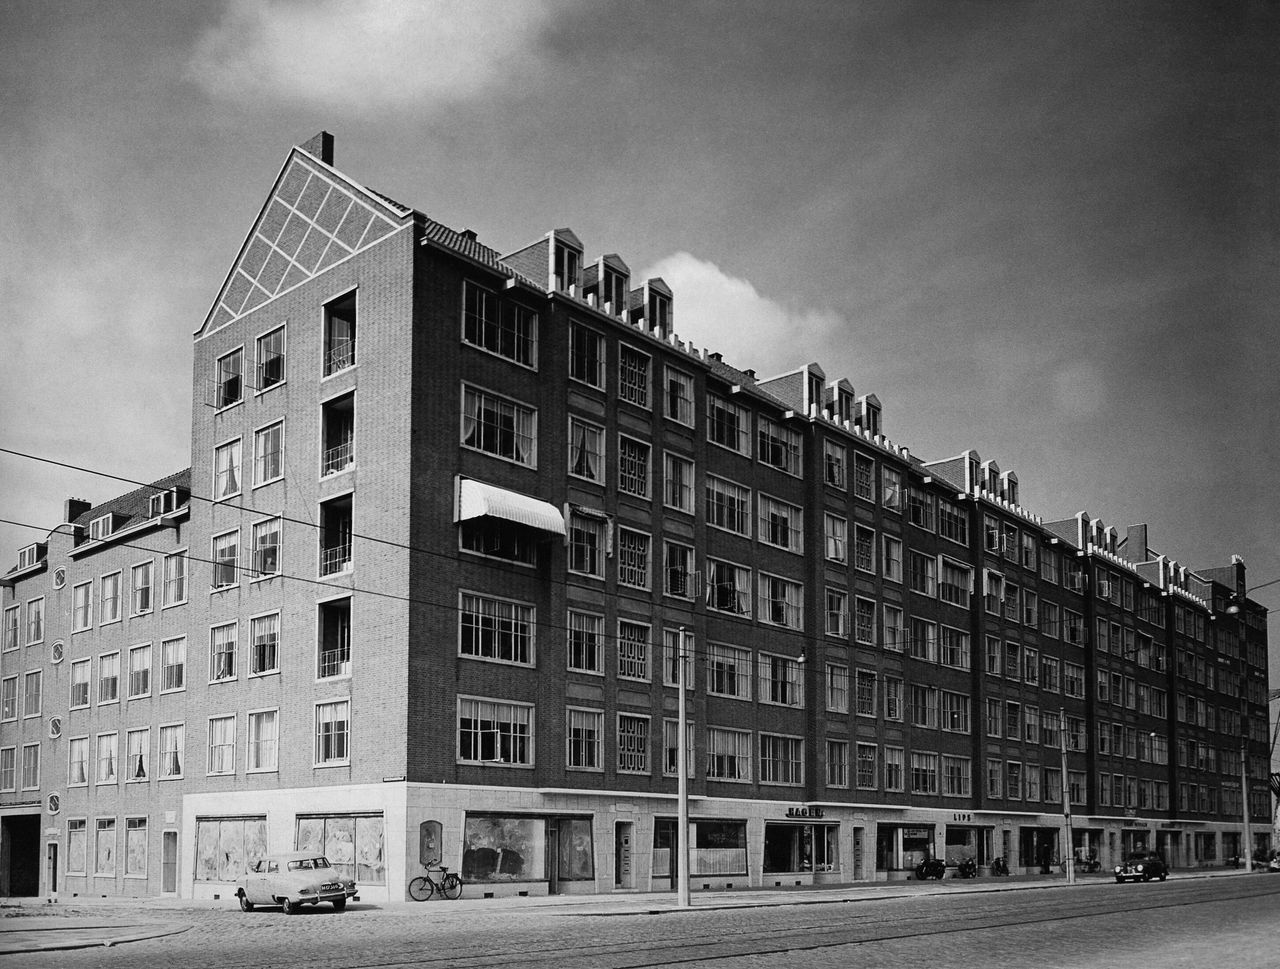 Το Ρότερνταμ Ισοπεδώθηκε το 1940. Αμέσως μετά τον πόλεμο άρχισε η ανοικοδόμησή του.μετατράπηκε από ένα πυκνοδομημένο και απαρχαιωμένο από άποψη κτιρίων και υποδομών λιμάνι, σε μια μοντέρνα, λειτουργική πόλη. Στη φωτογραφία του 1950 ένα από τα νέα κτίρια.